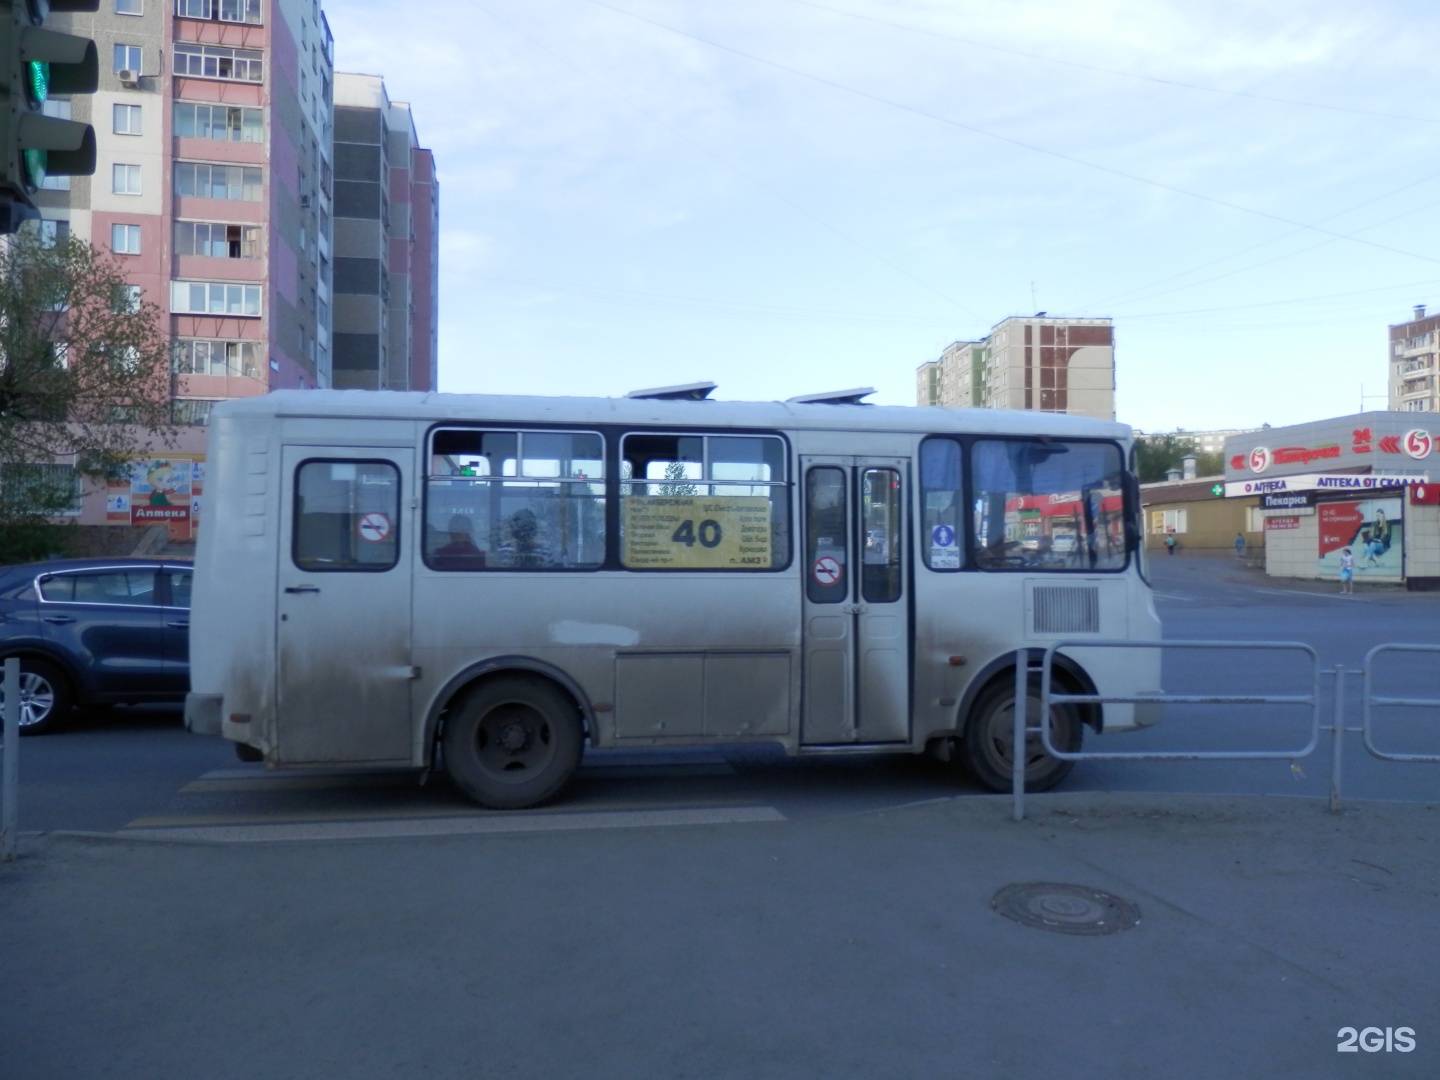 Изменение 40 маршрута. Автобус Челябинск. Автобус 40 Красноярск. 40 Маршрутка. Маршрутки Челябинск.